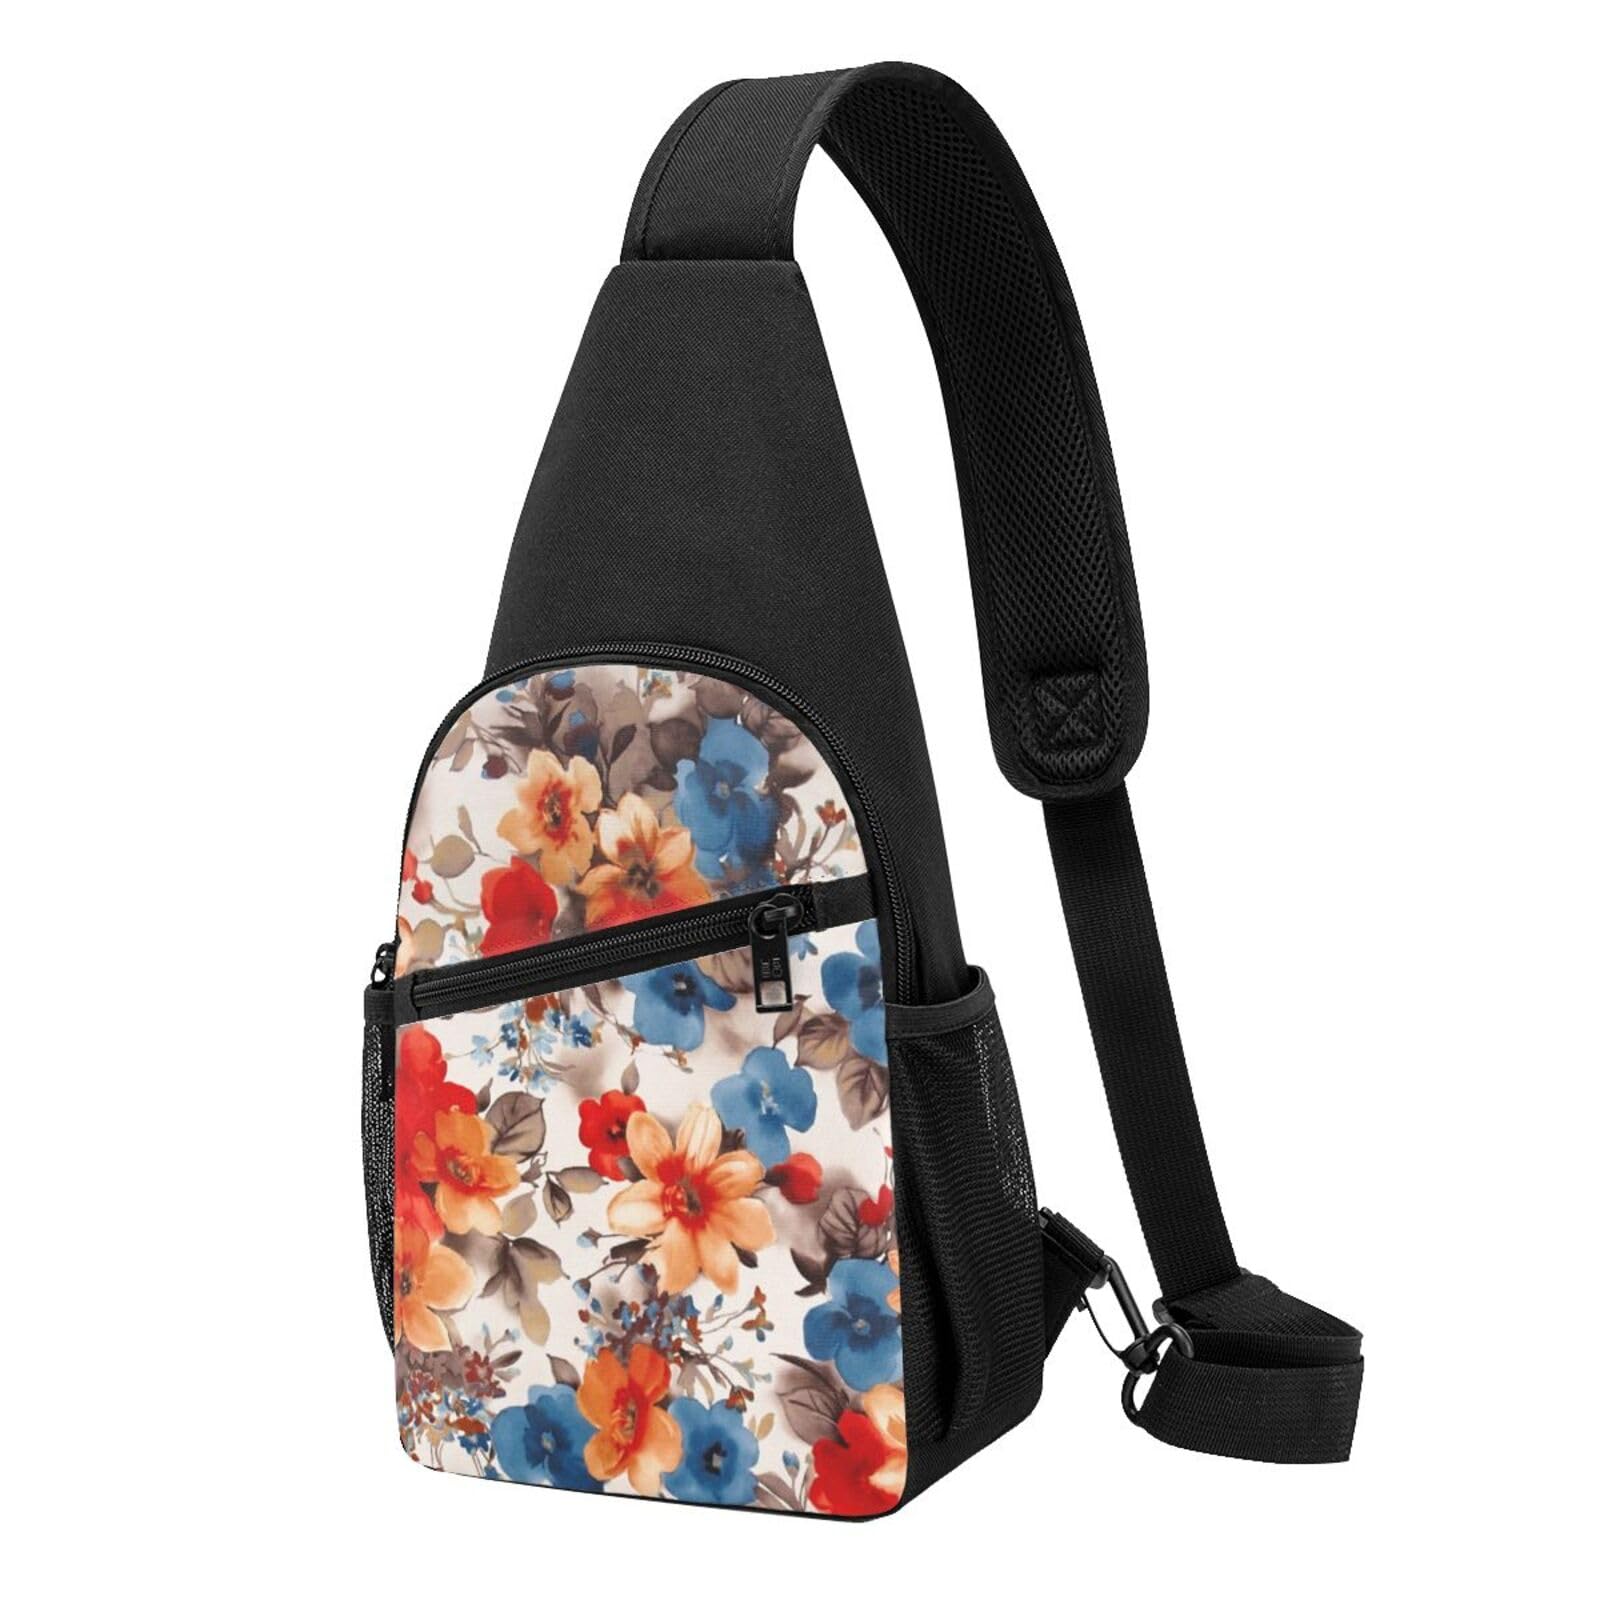 Navaho Style Sling Bag Crossbody Rucksack Brustrucksack für Herren Damen, verstellbare linke und rechte Schulter, Wandern, lässiger Tagesrucksack, Blumendruck, Einheitsgröße